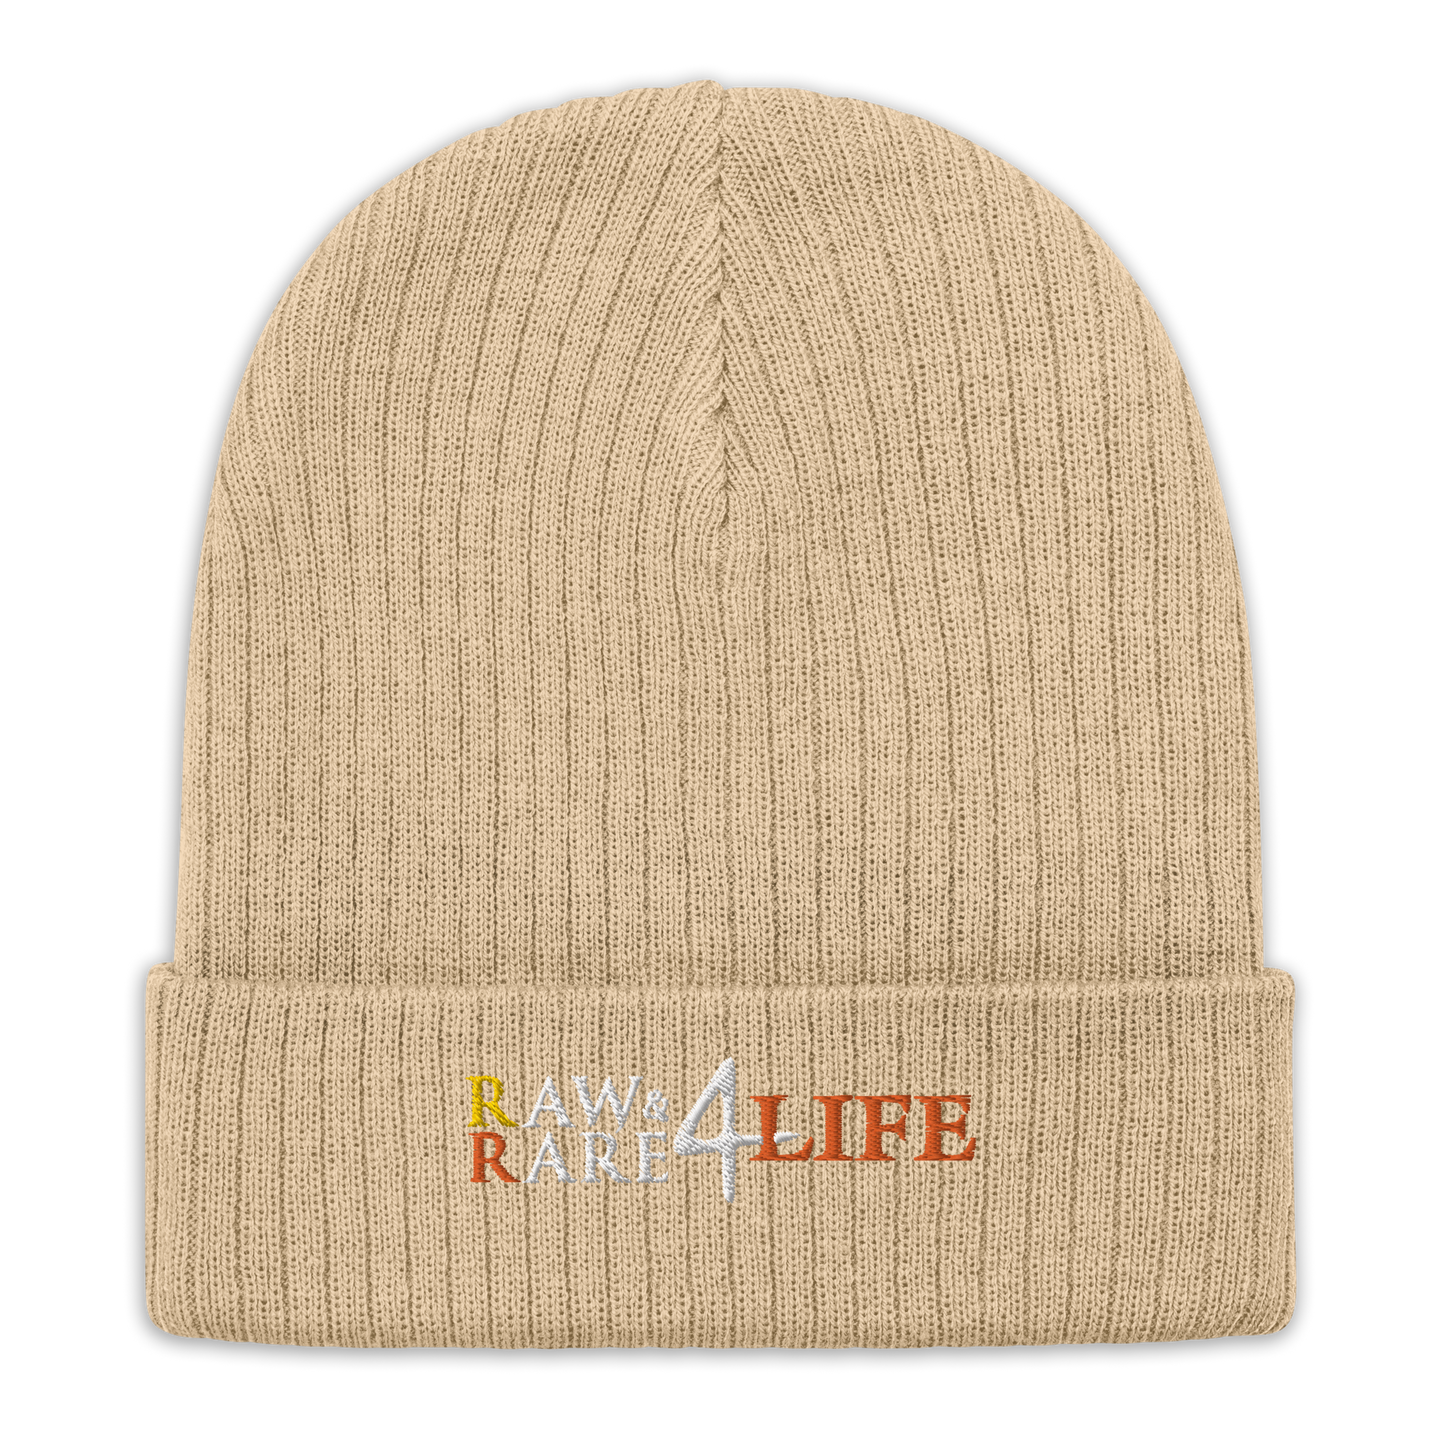 Raw & Rare 4 life Ribbed Beanie